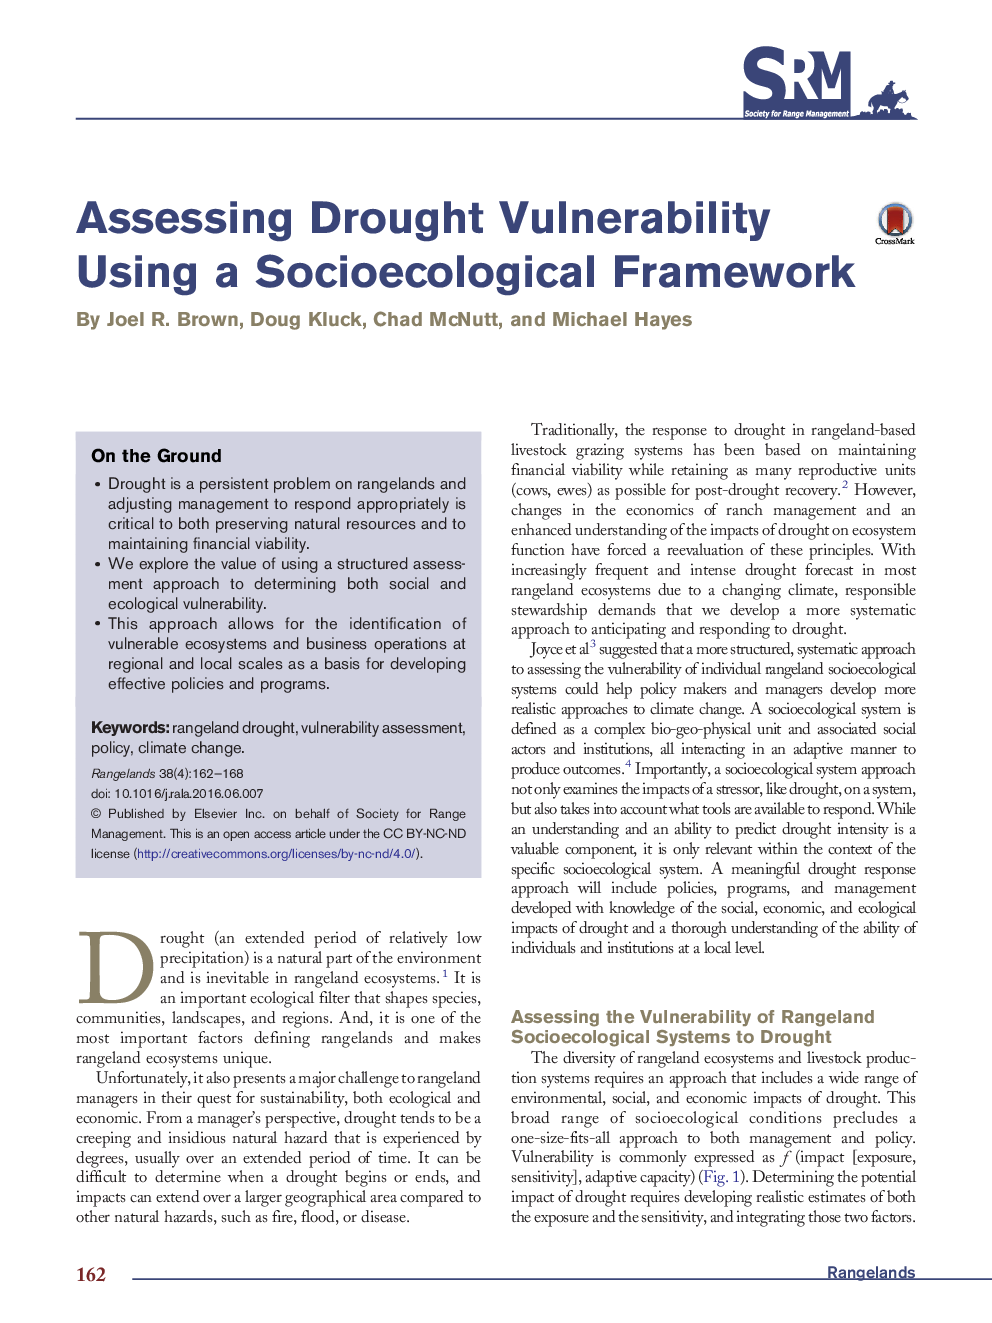 ارزیابی آسیب پذیری خشکسالی با استفاده از یک چارچوب اجتماعی-فرهنگی 